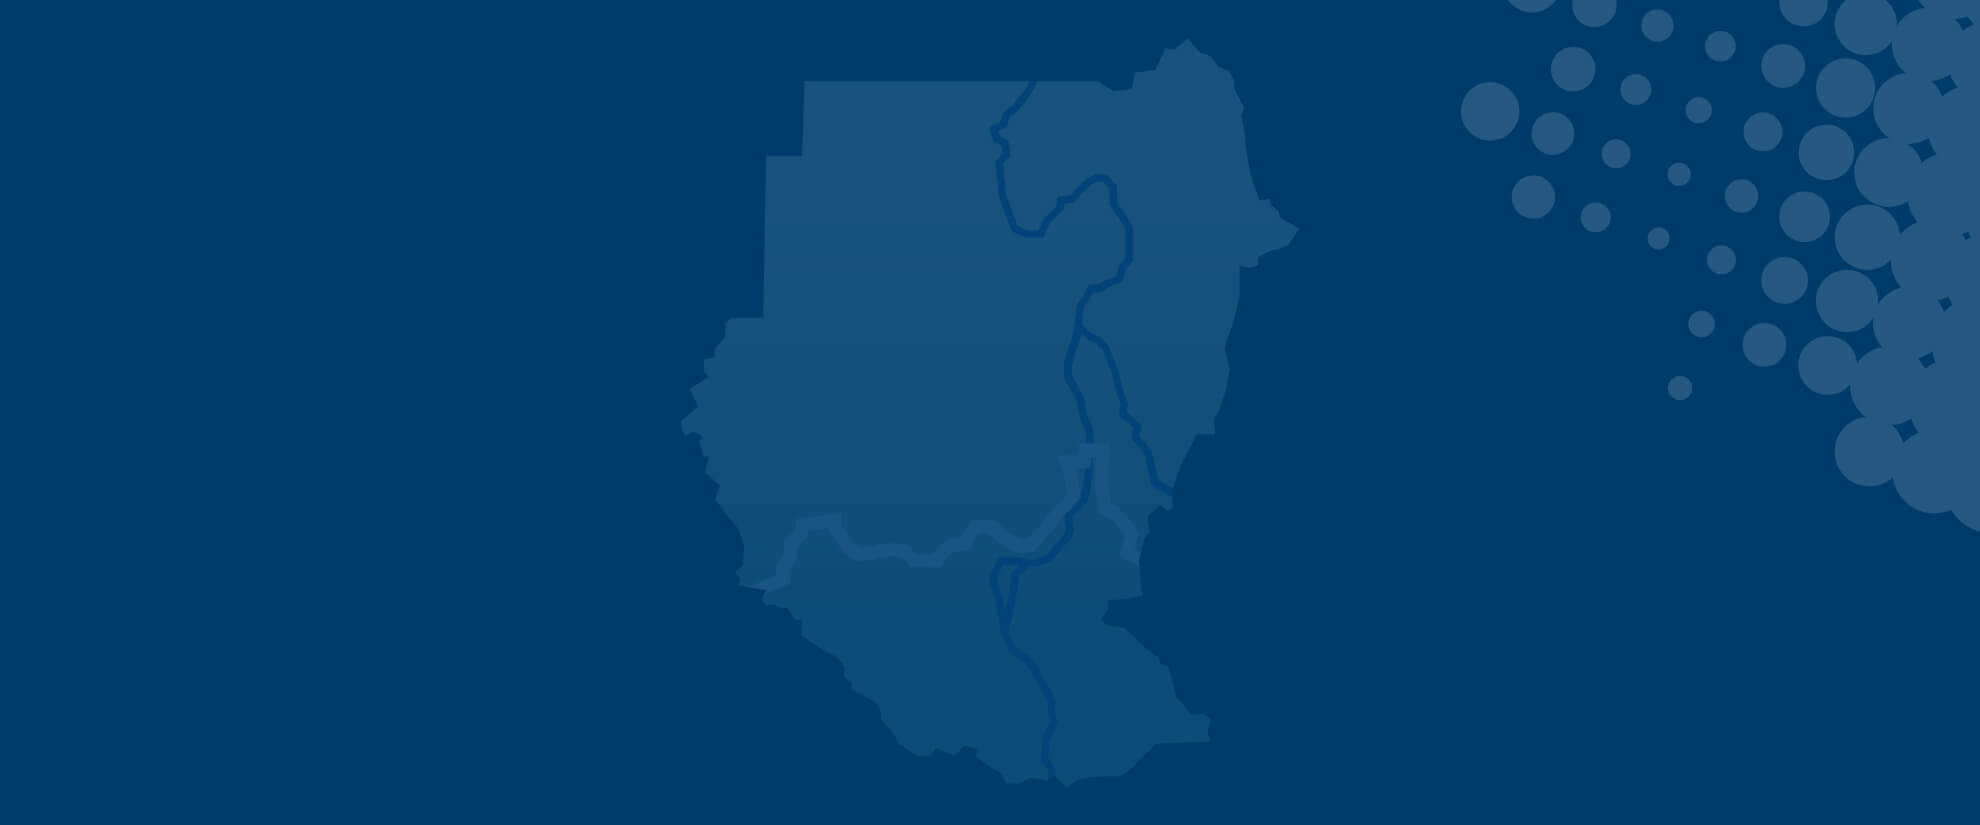 Sudanese Programme logo on blue background